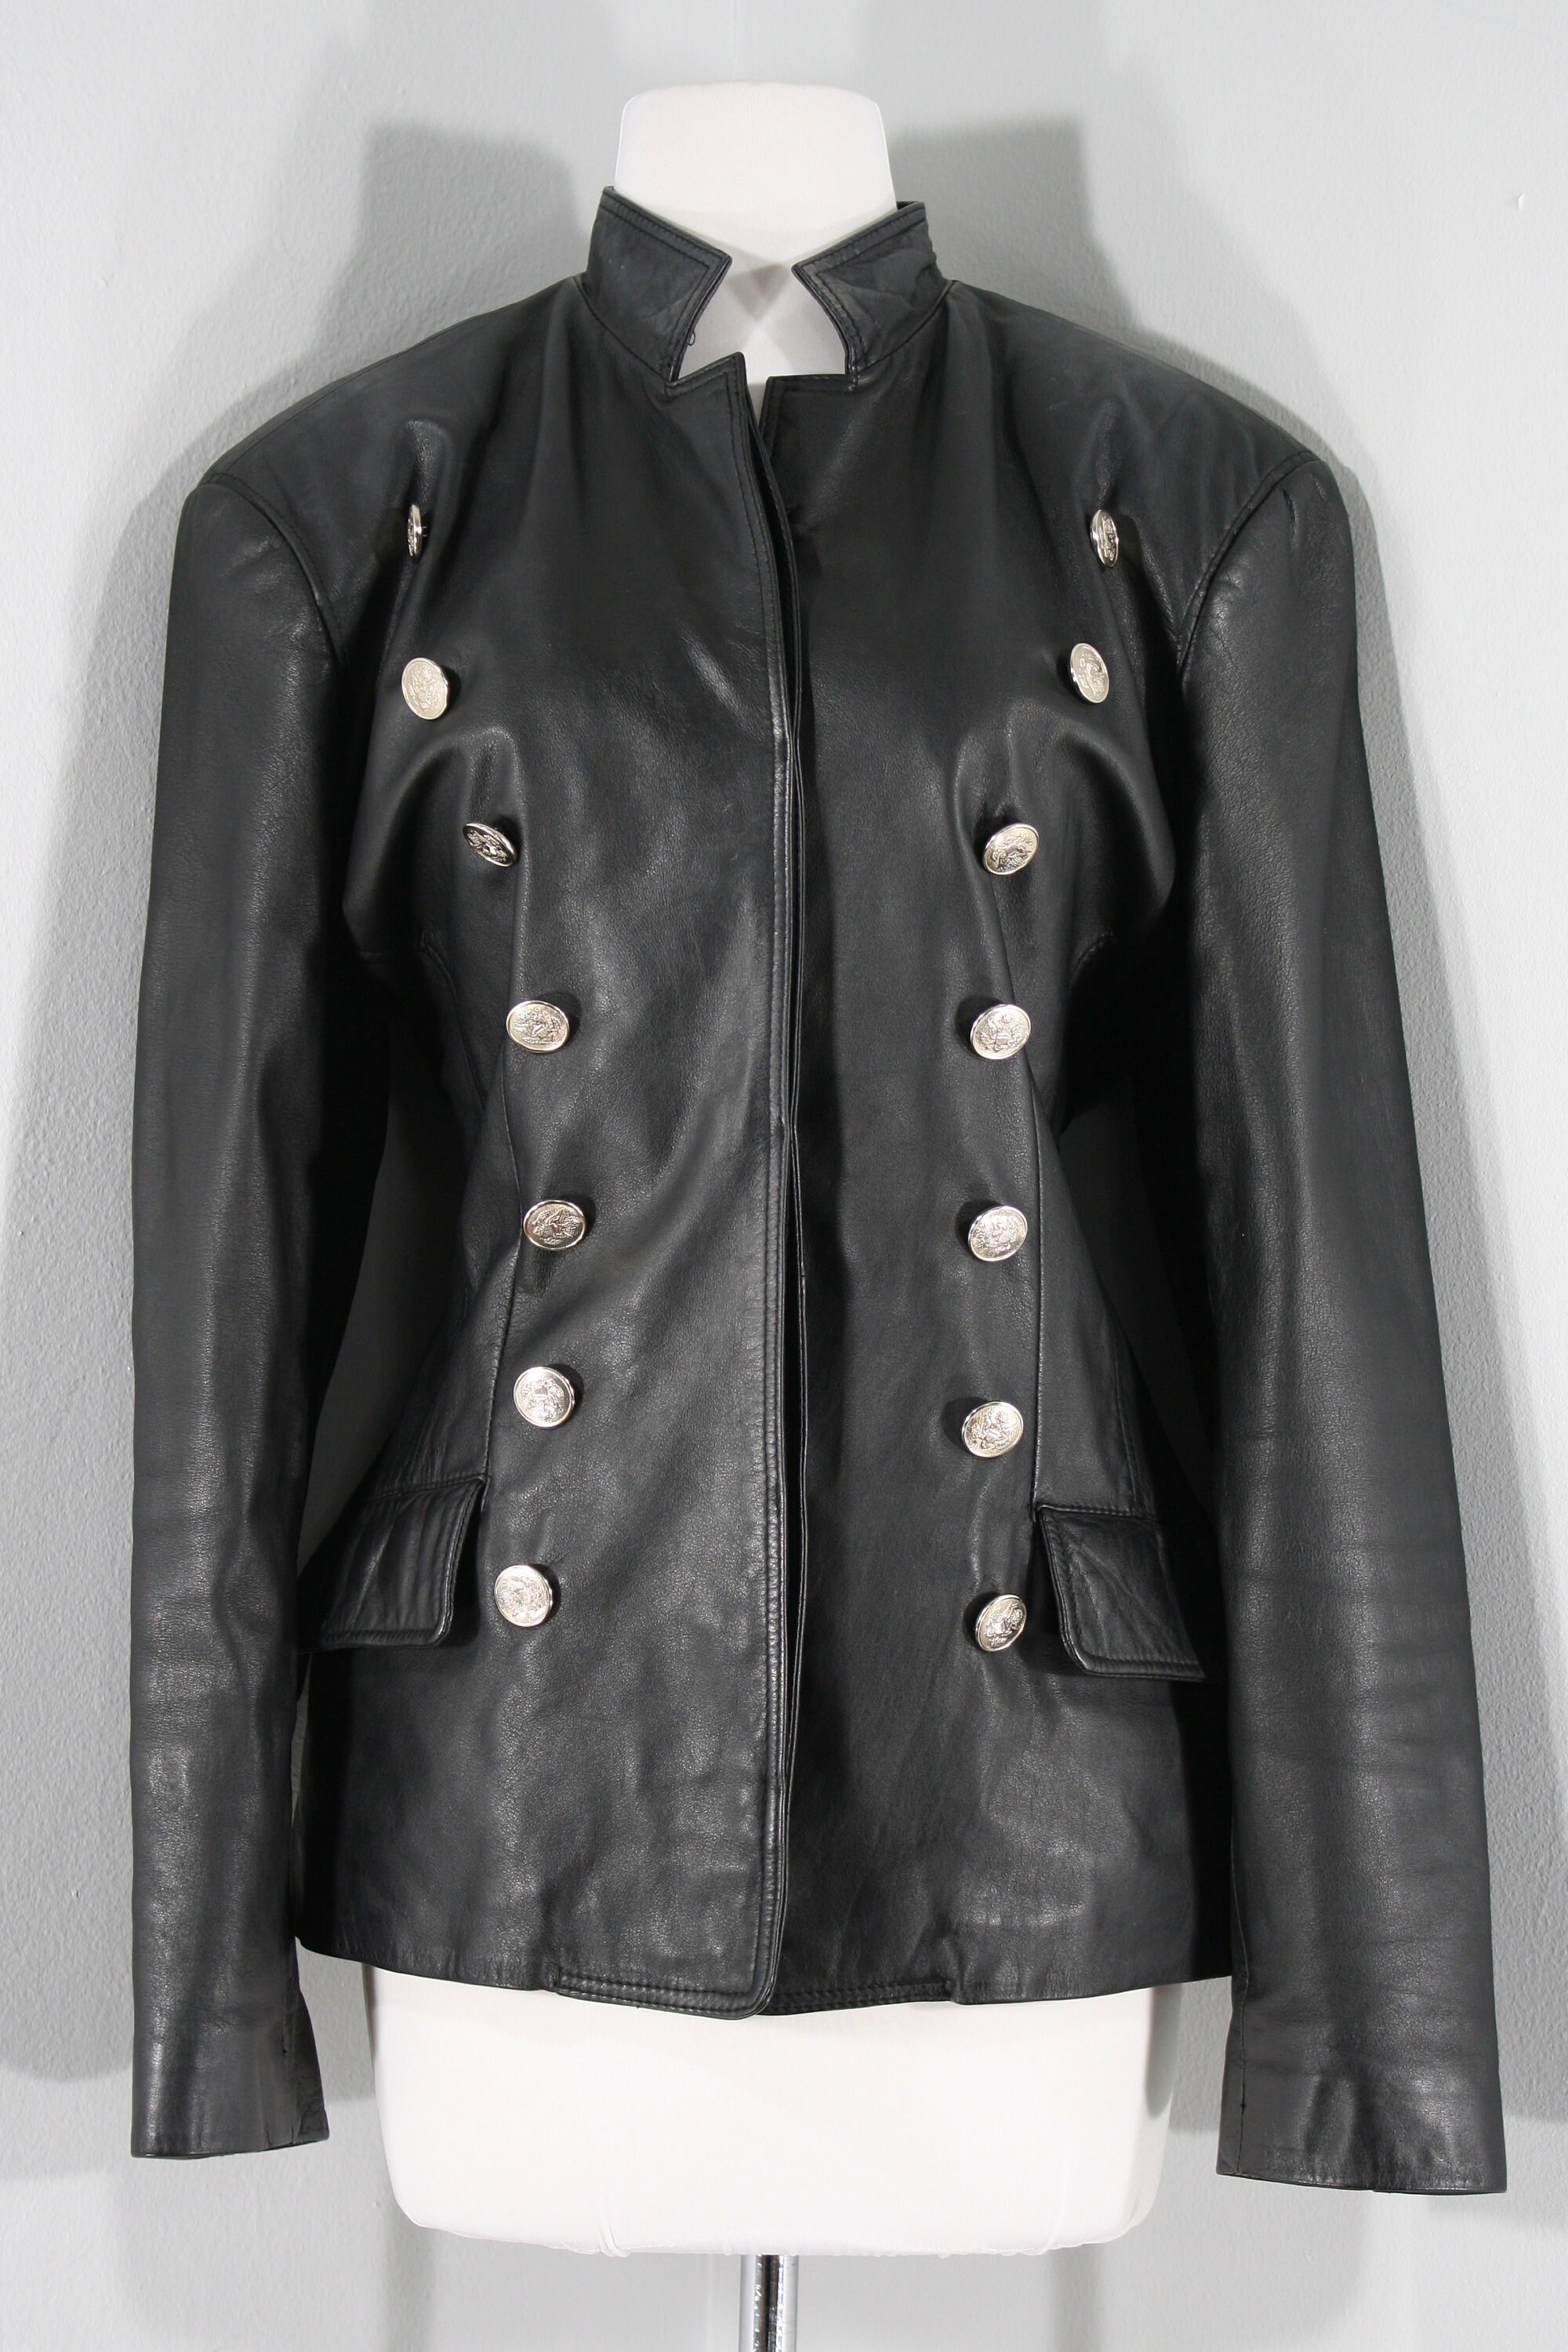 1990s Black Leather Jacket Medium to Large 90s Black Double - Etsy